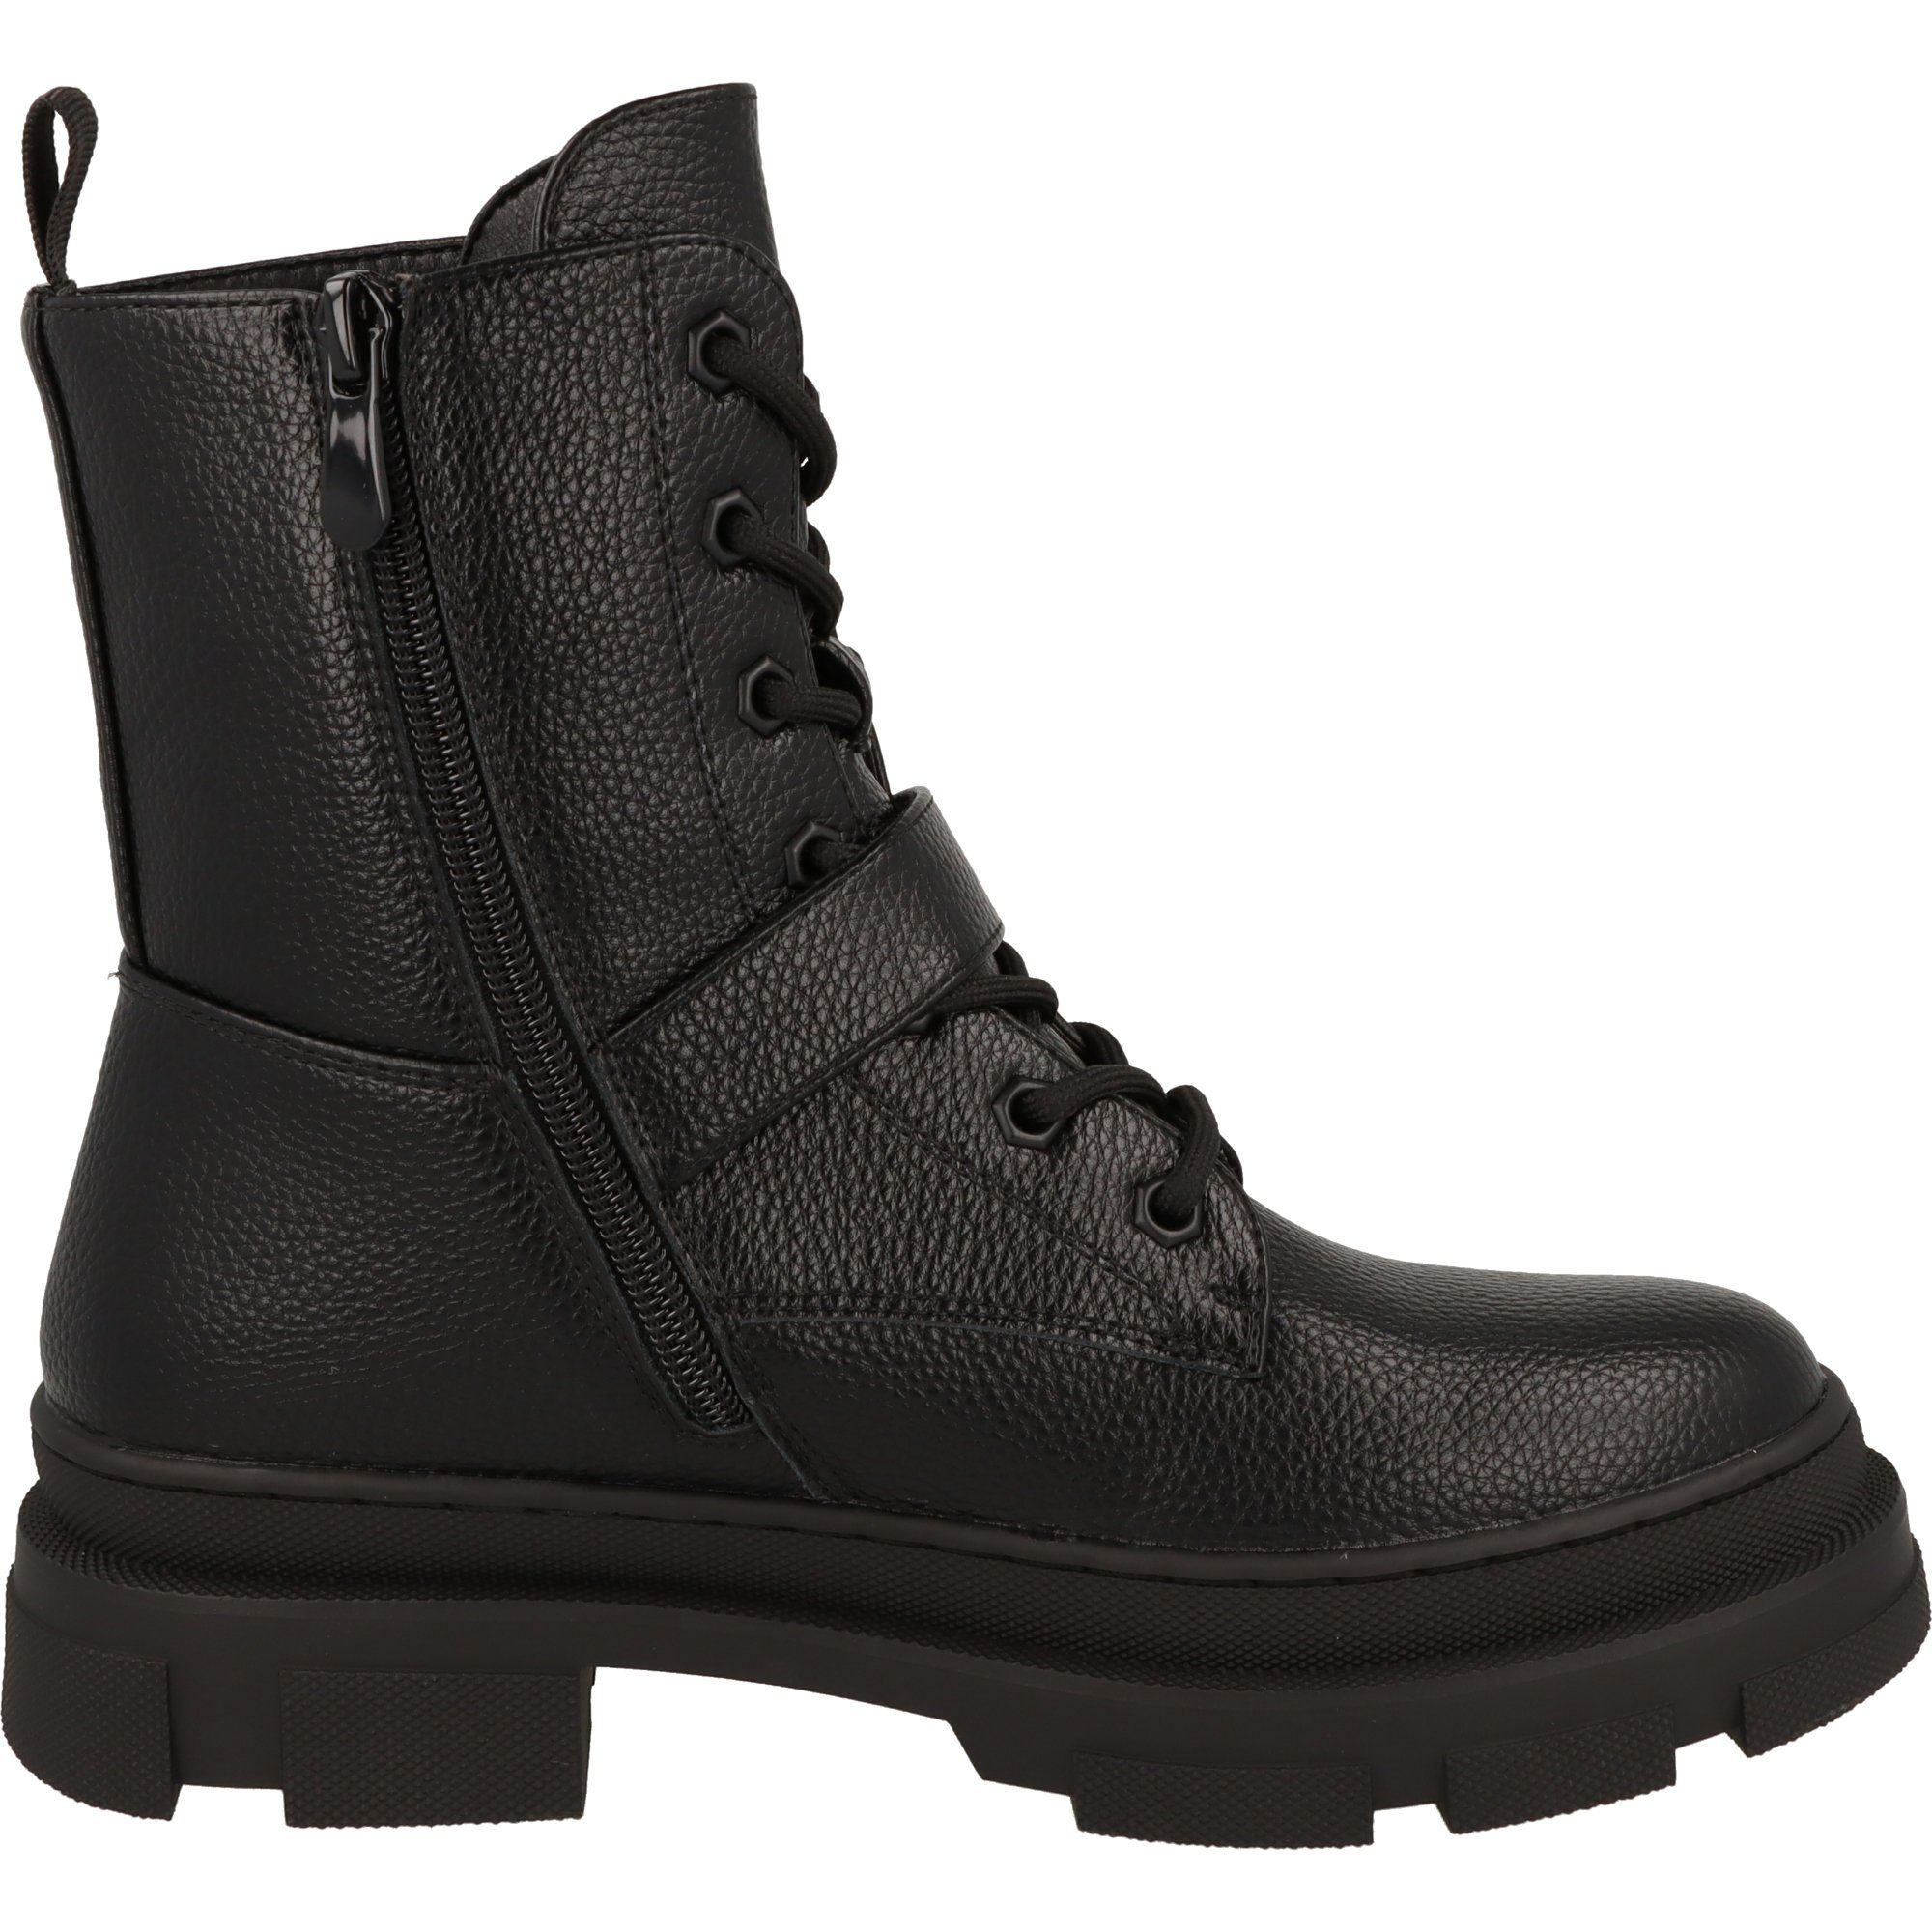 Boots Tumble 2180776 La Damen Black Stiefel Strada Schnürstiefel stylische Schuhe